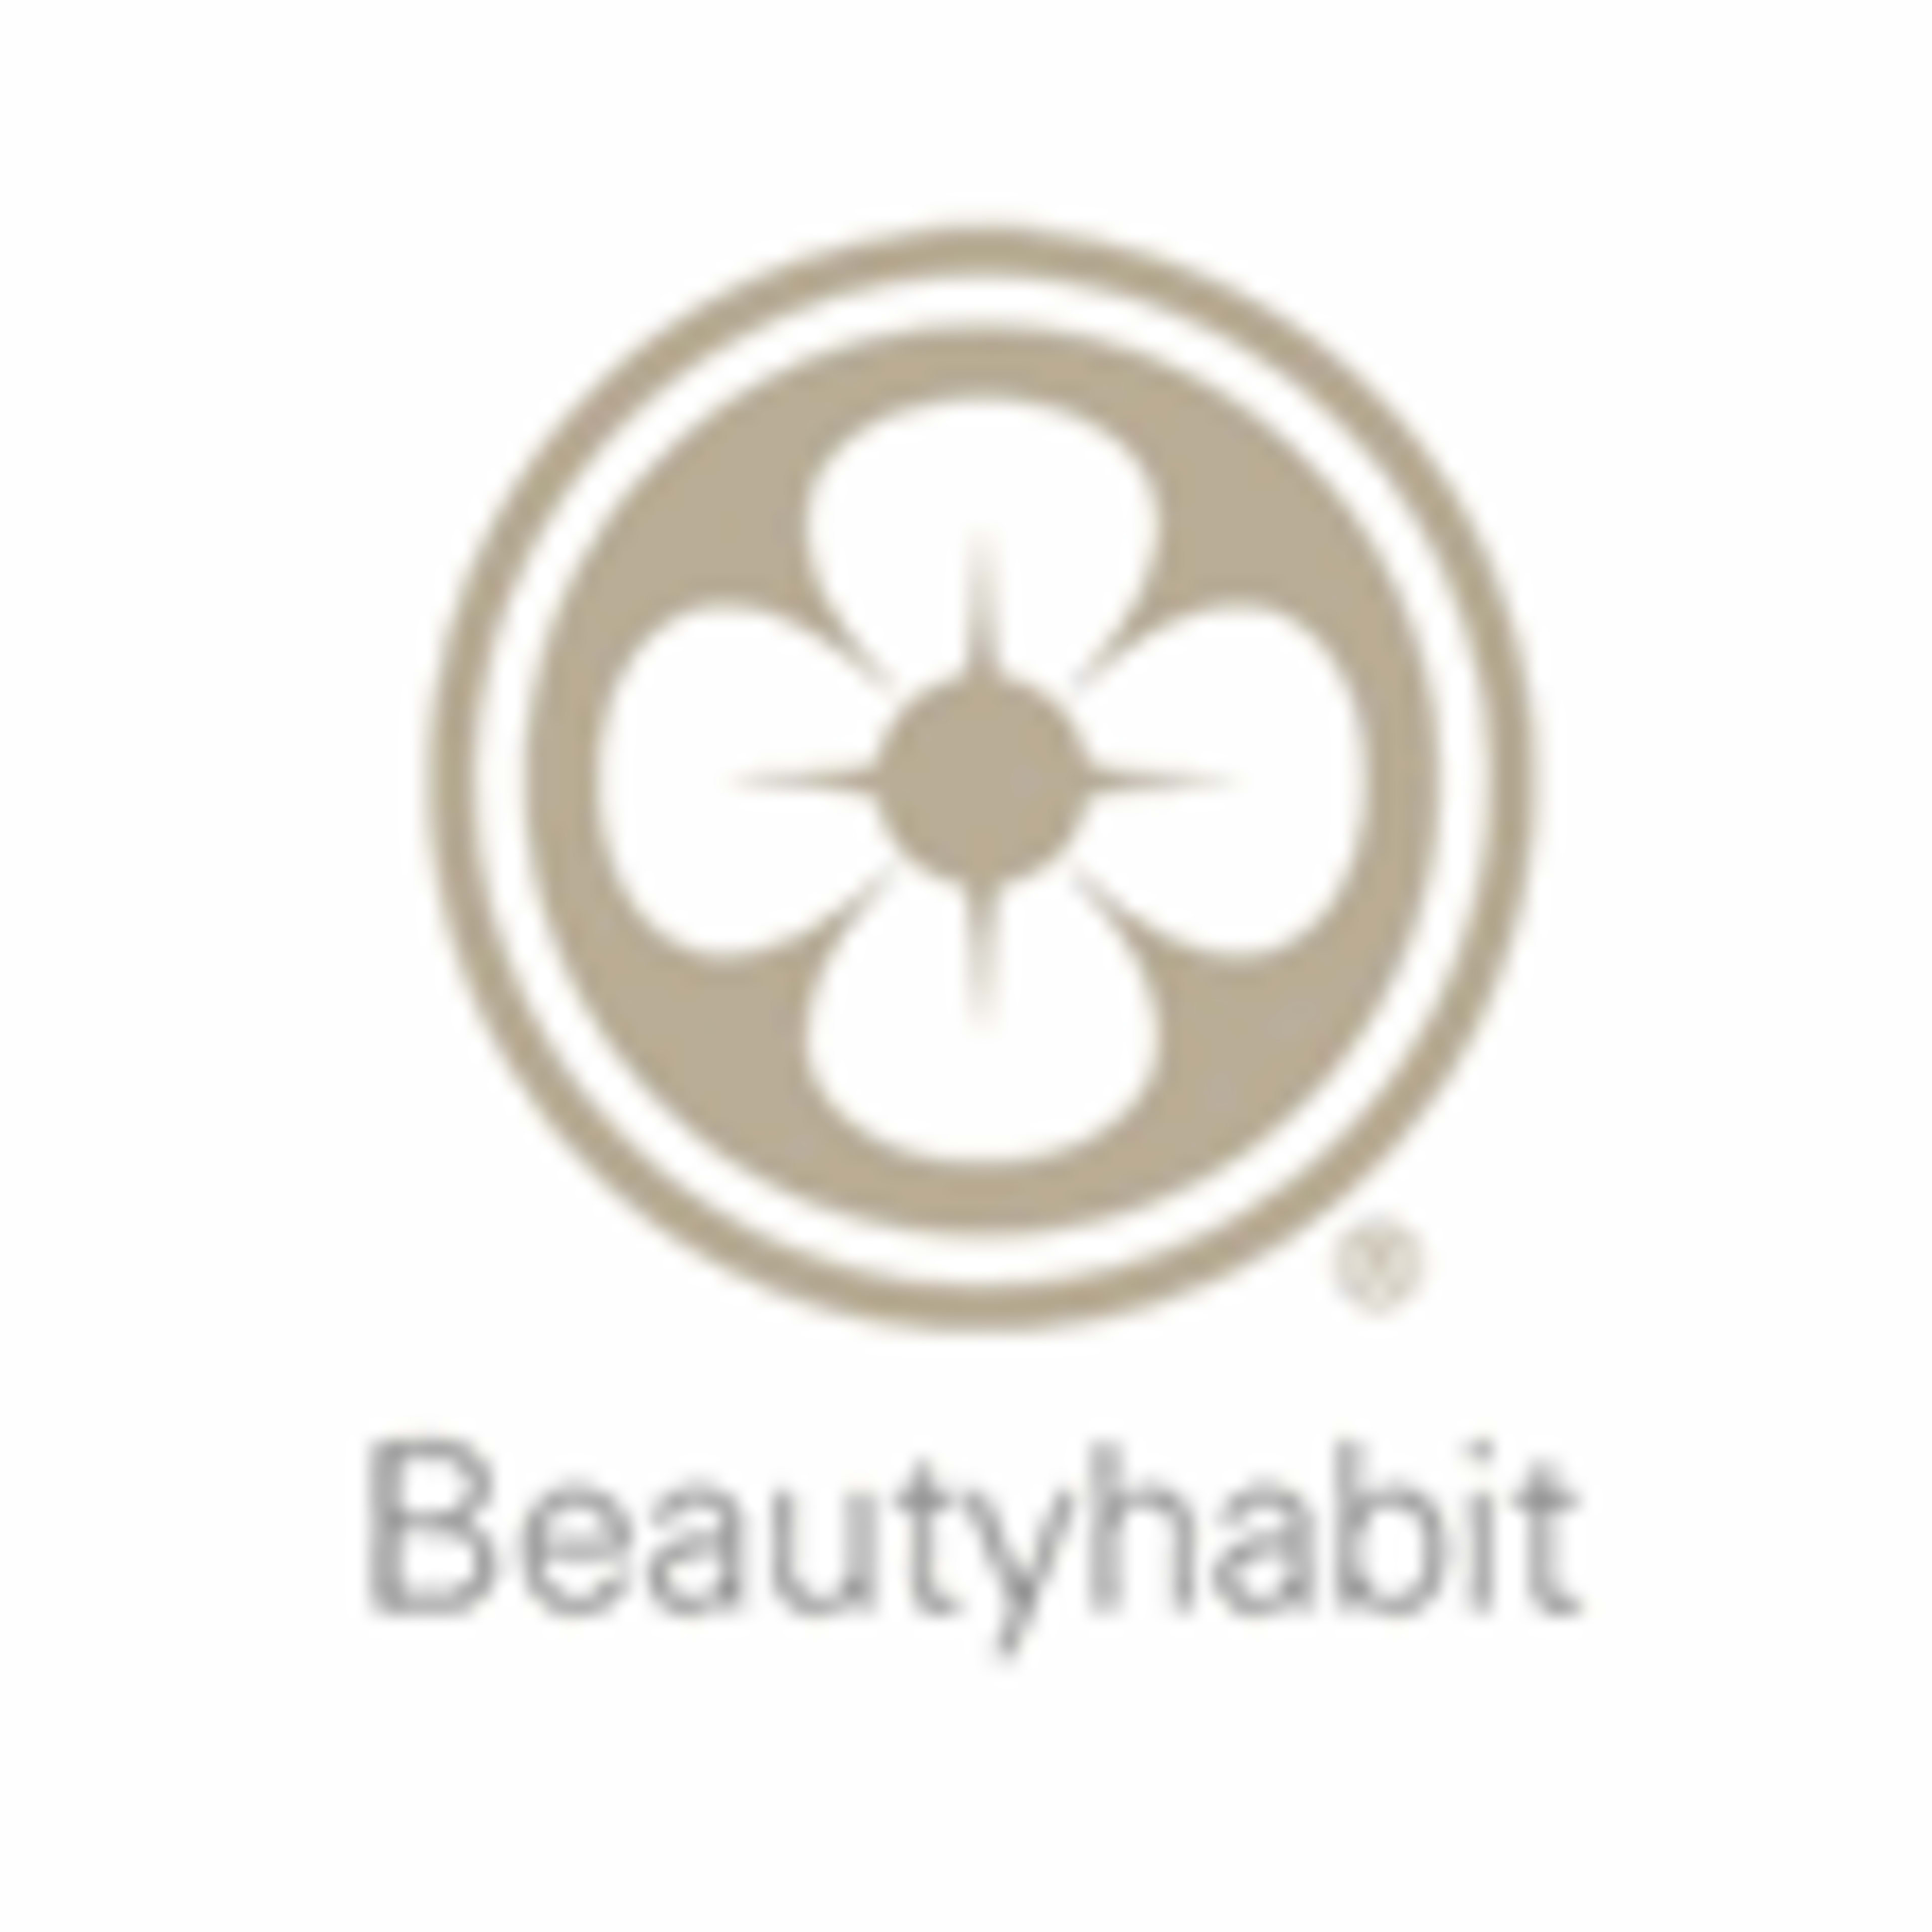 BeautyHabit.com Code